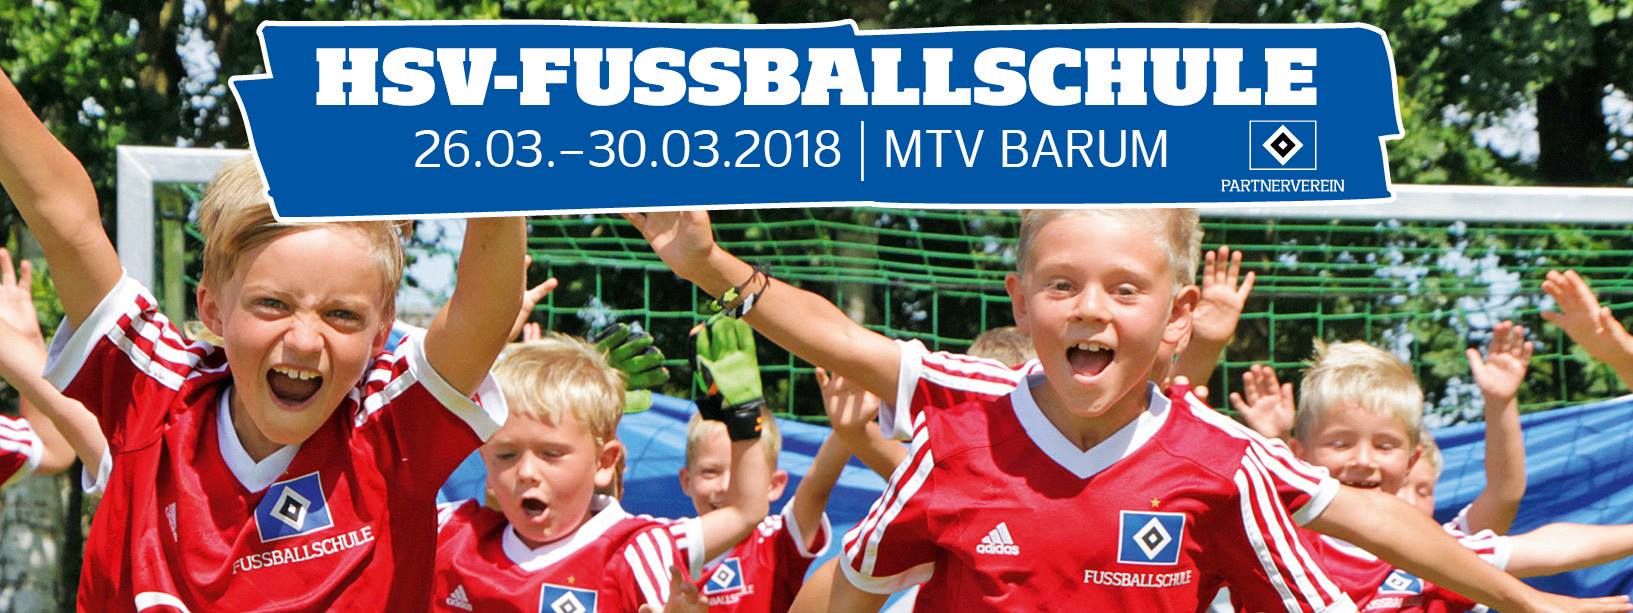 HSV Fussballschule Banner